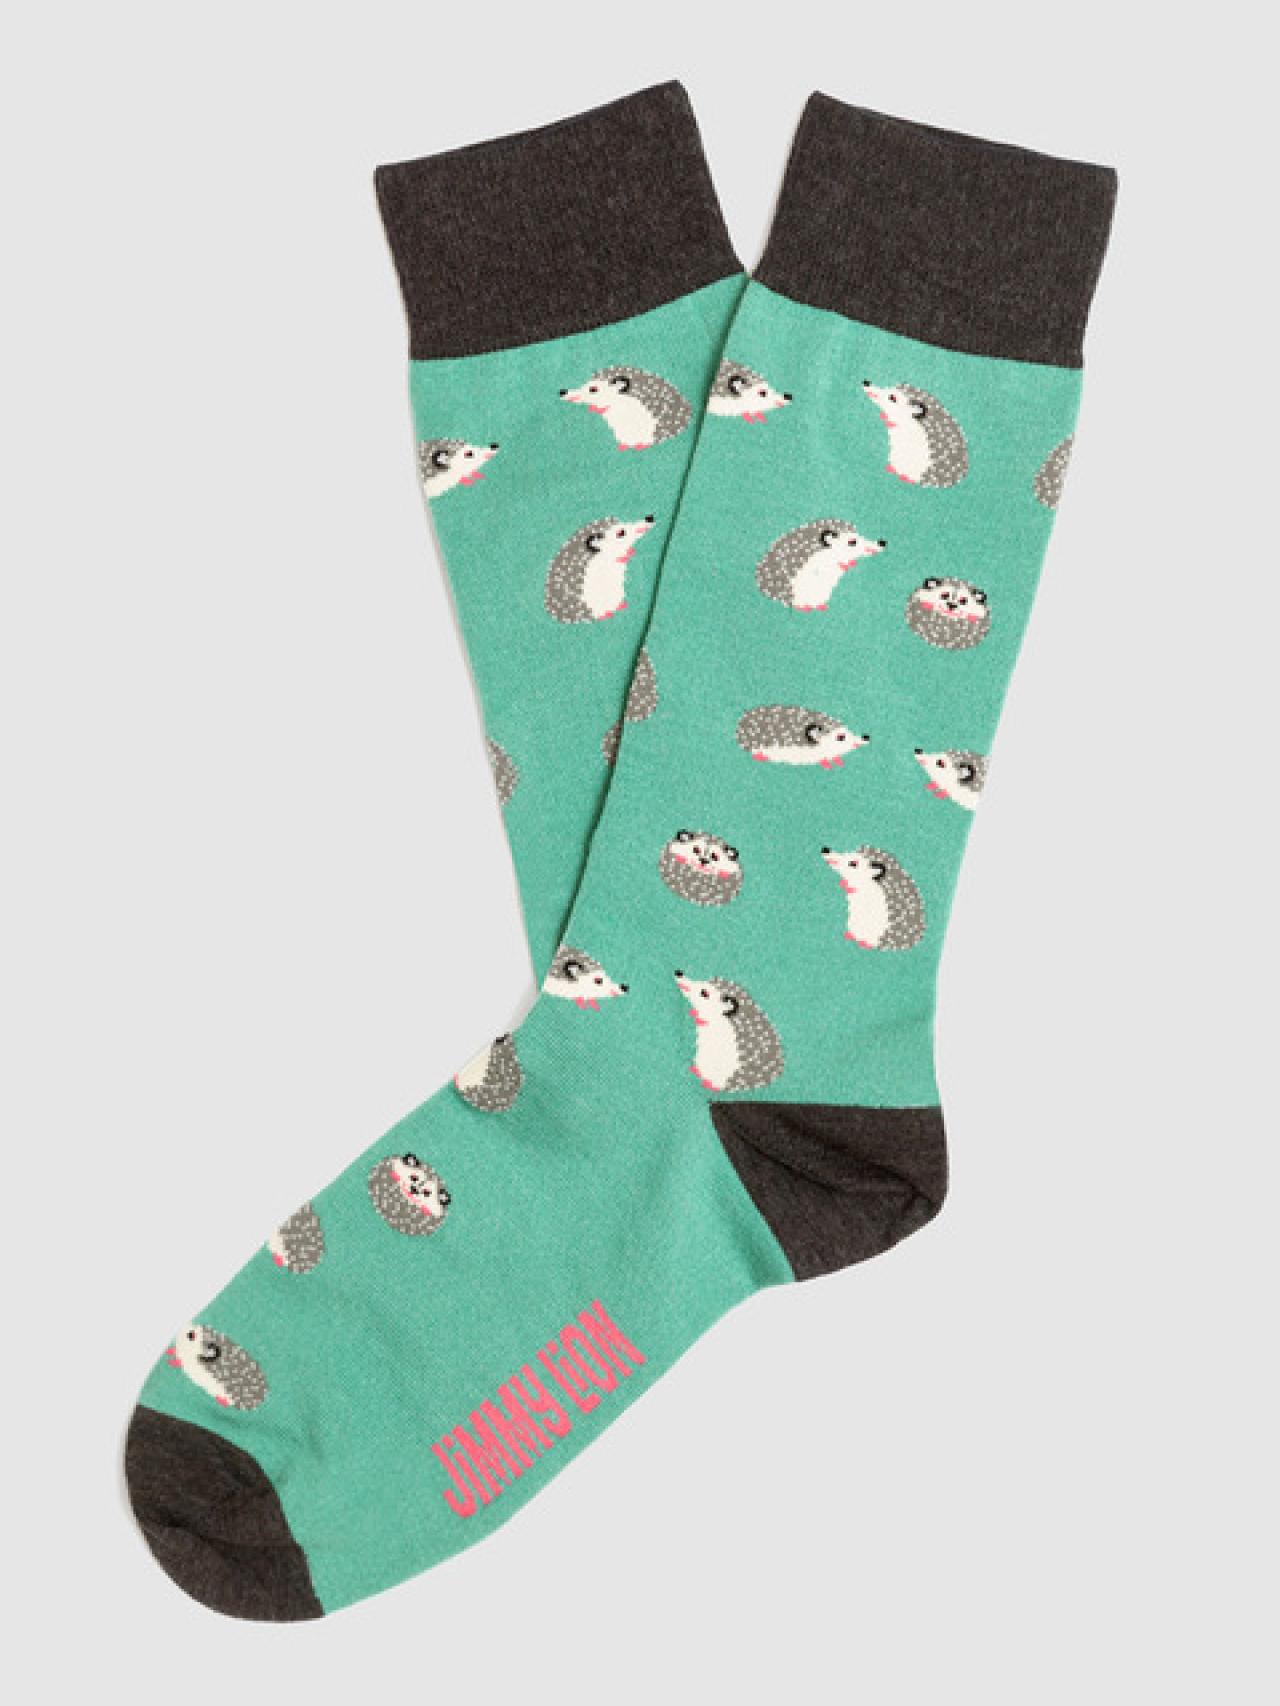 Los calcetines más originales para regalar en Navidad y no pasar